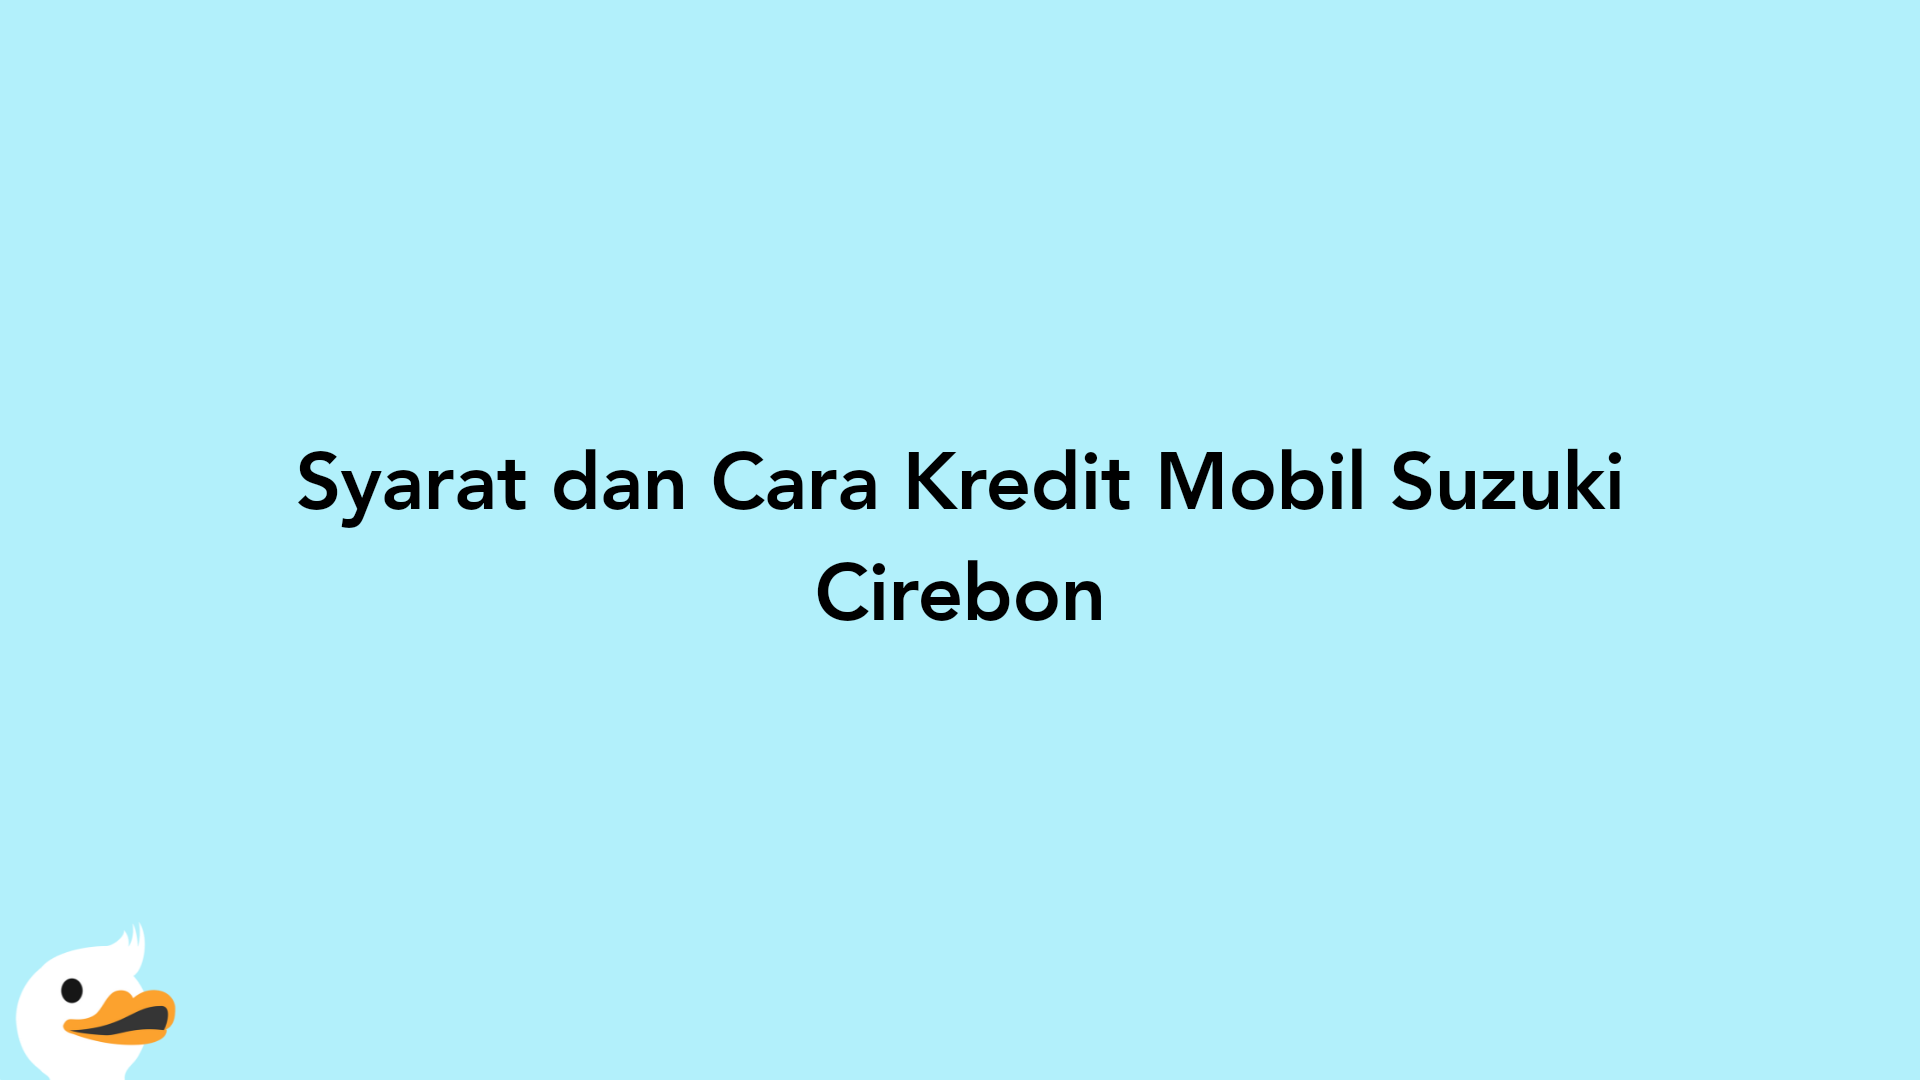 Syarat dan Cara Kredit Mobil Suzuki Cirebon